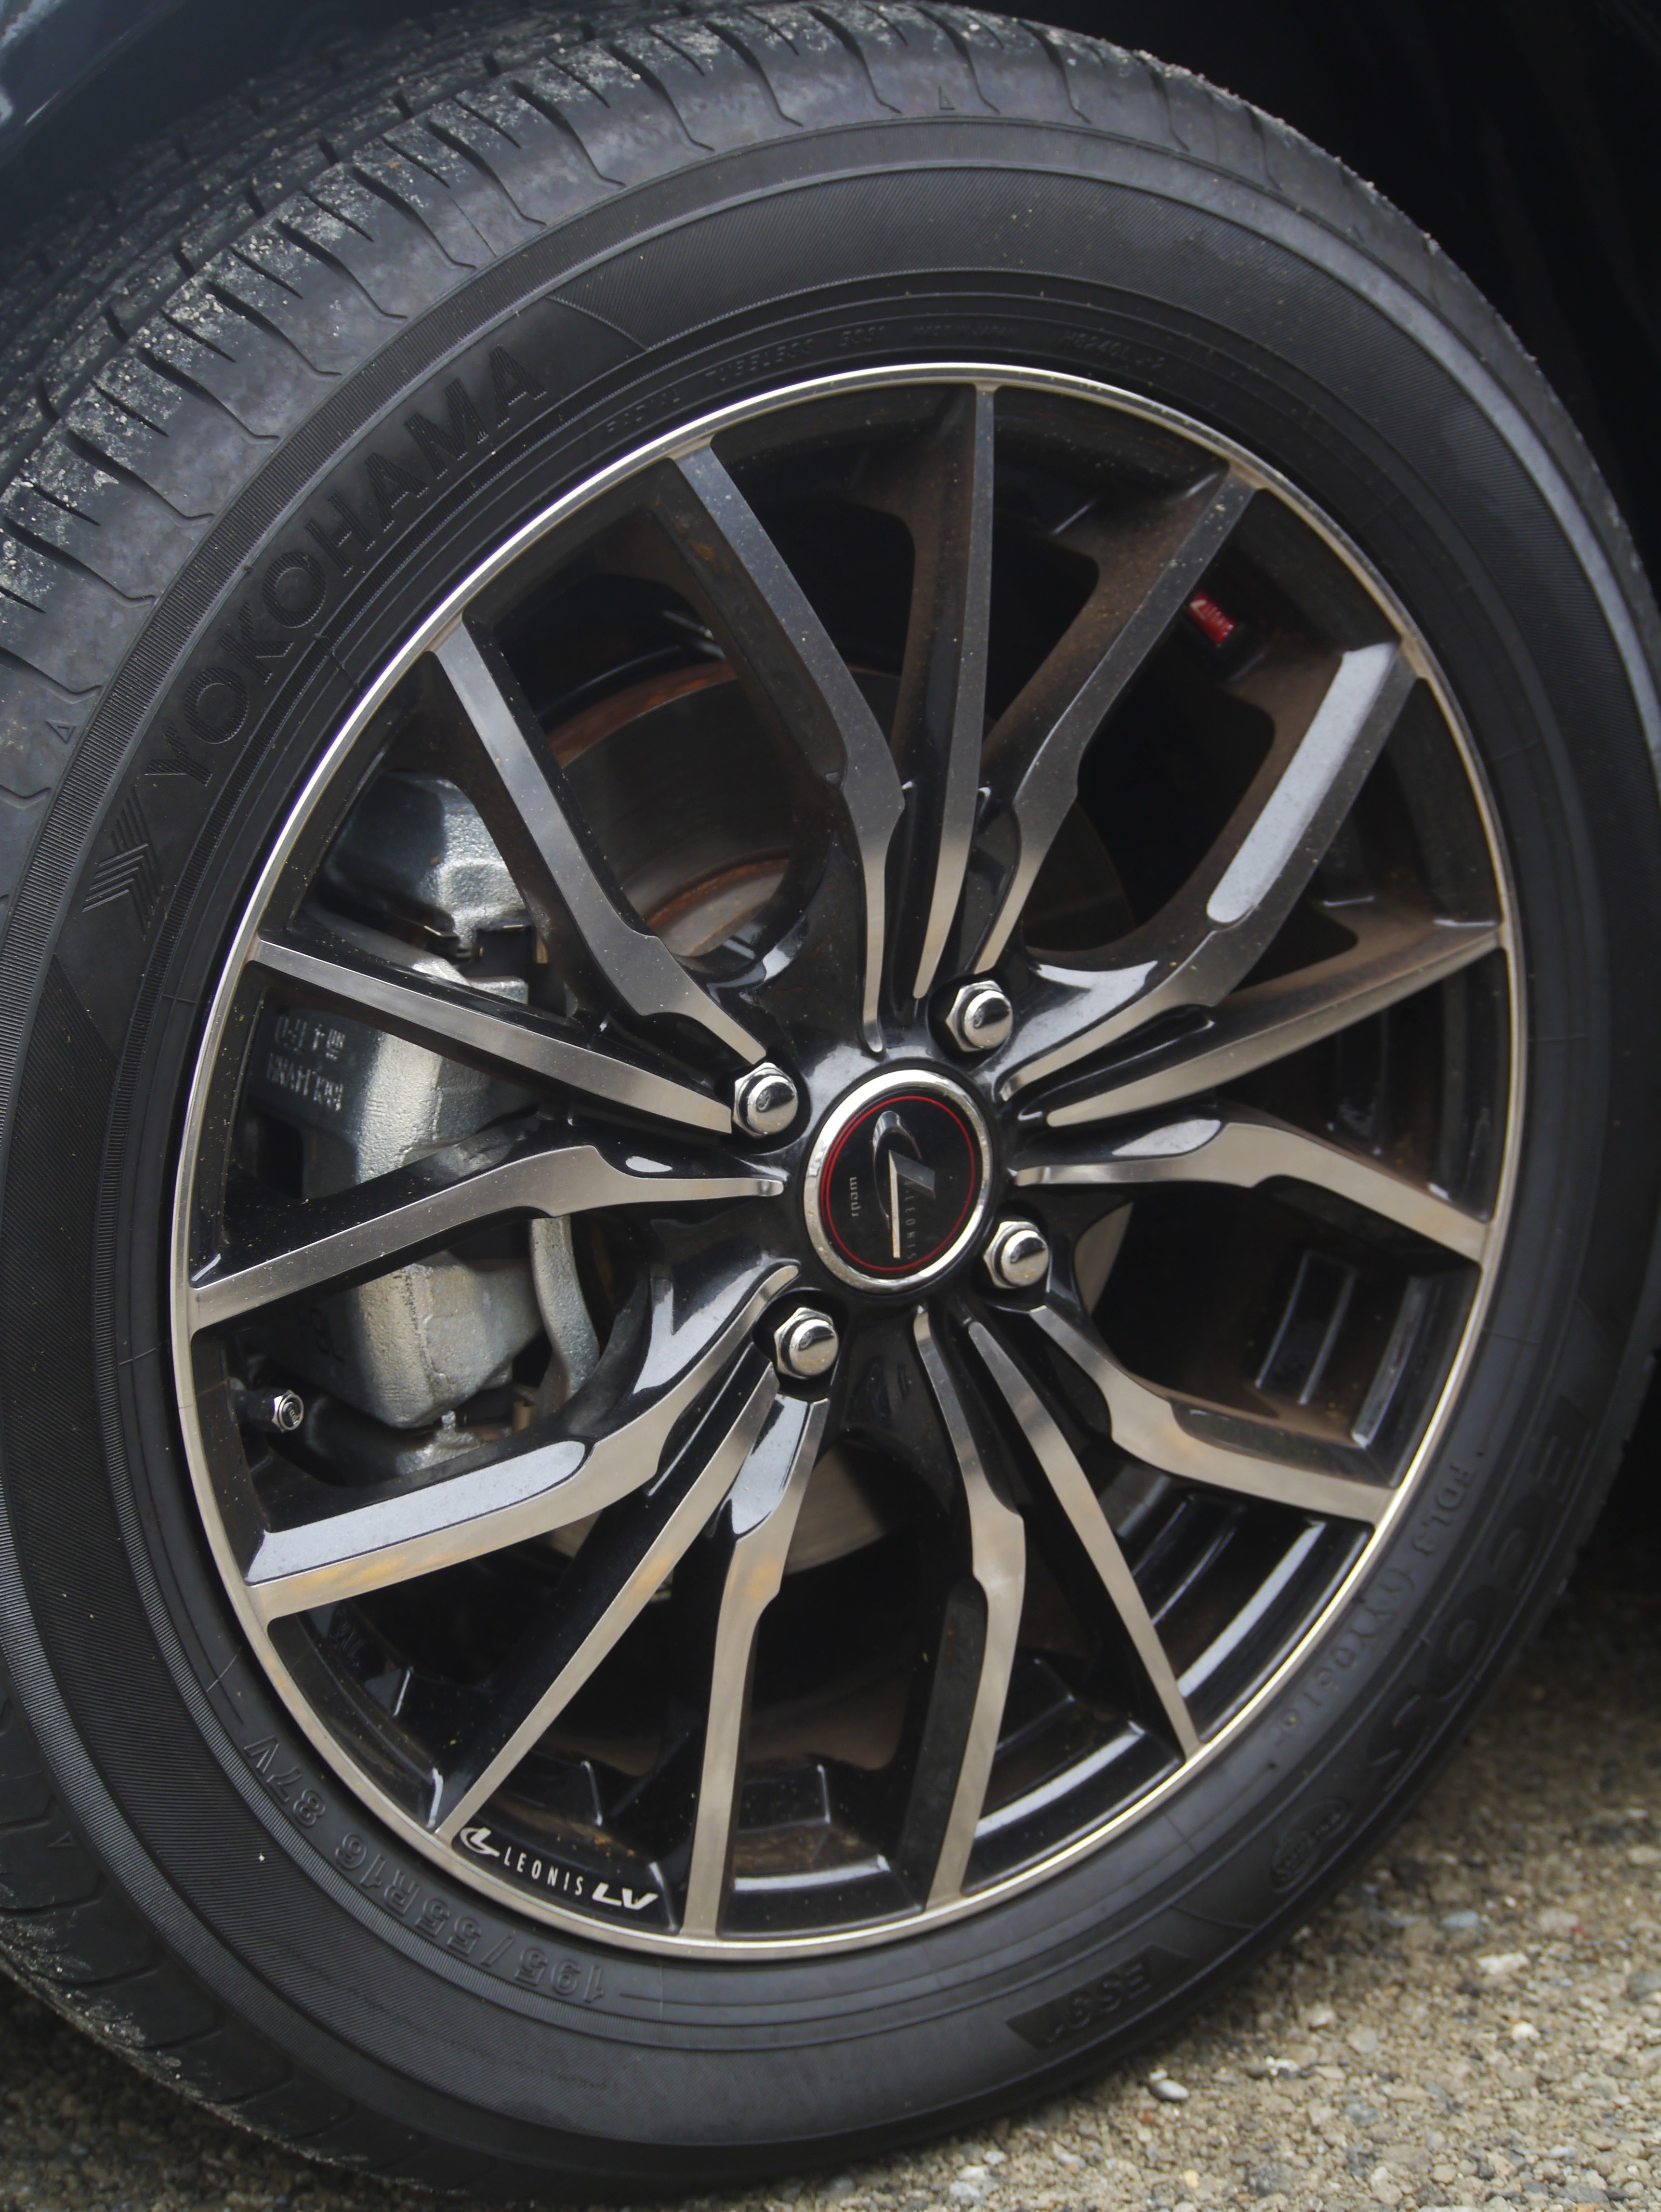 chrome multispoke car wheel